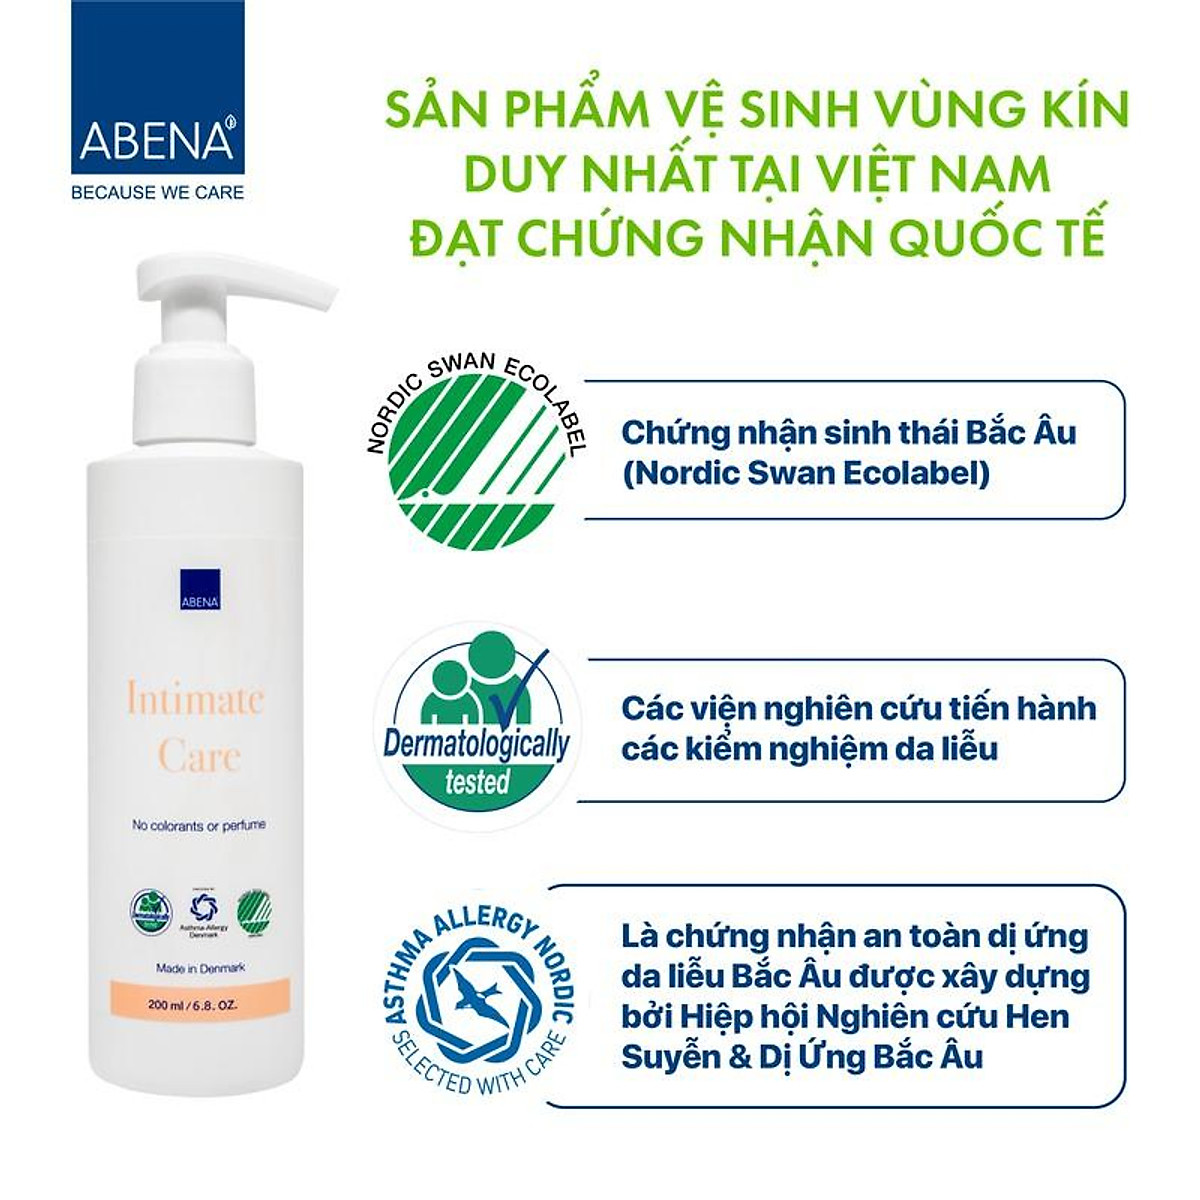 Dung dịch nước rửa vệ sinh phụ nữ Abena Intimate Care 200ml nhập khẩu Châu Âu an toàn cho sức khỏe